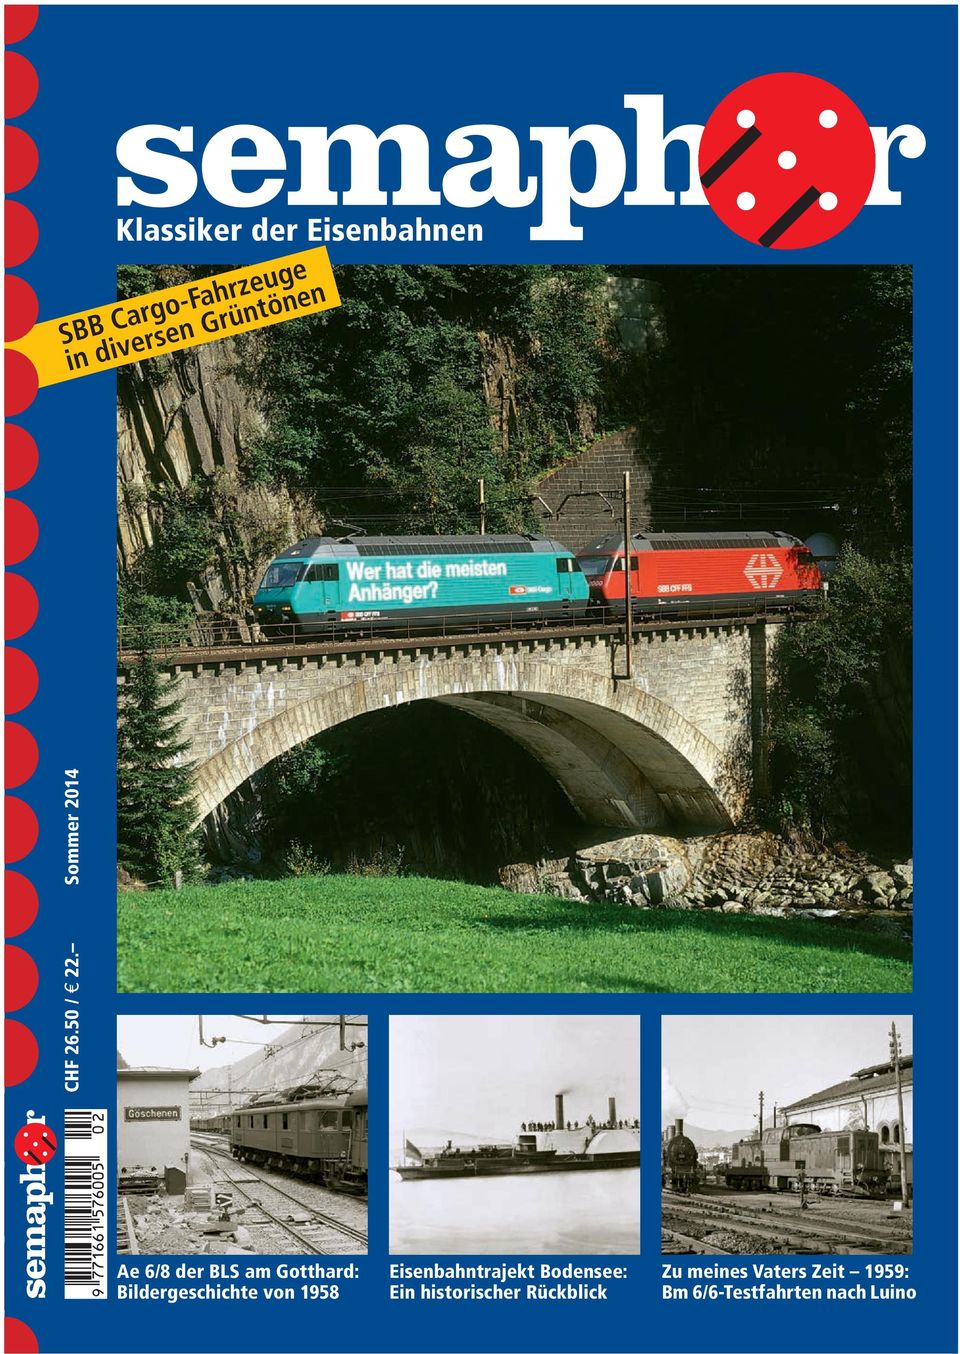 Sommer 2014 Ae 6/8 der BLS am Gotthard: Bildergeschichte von 1958